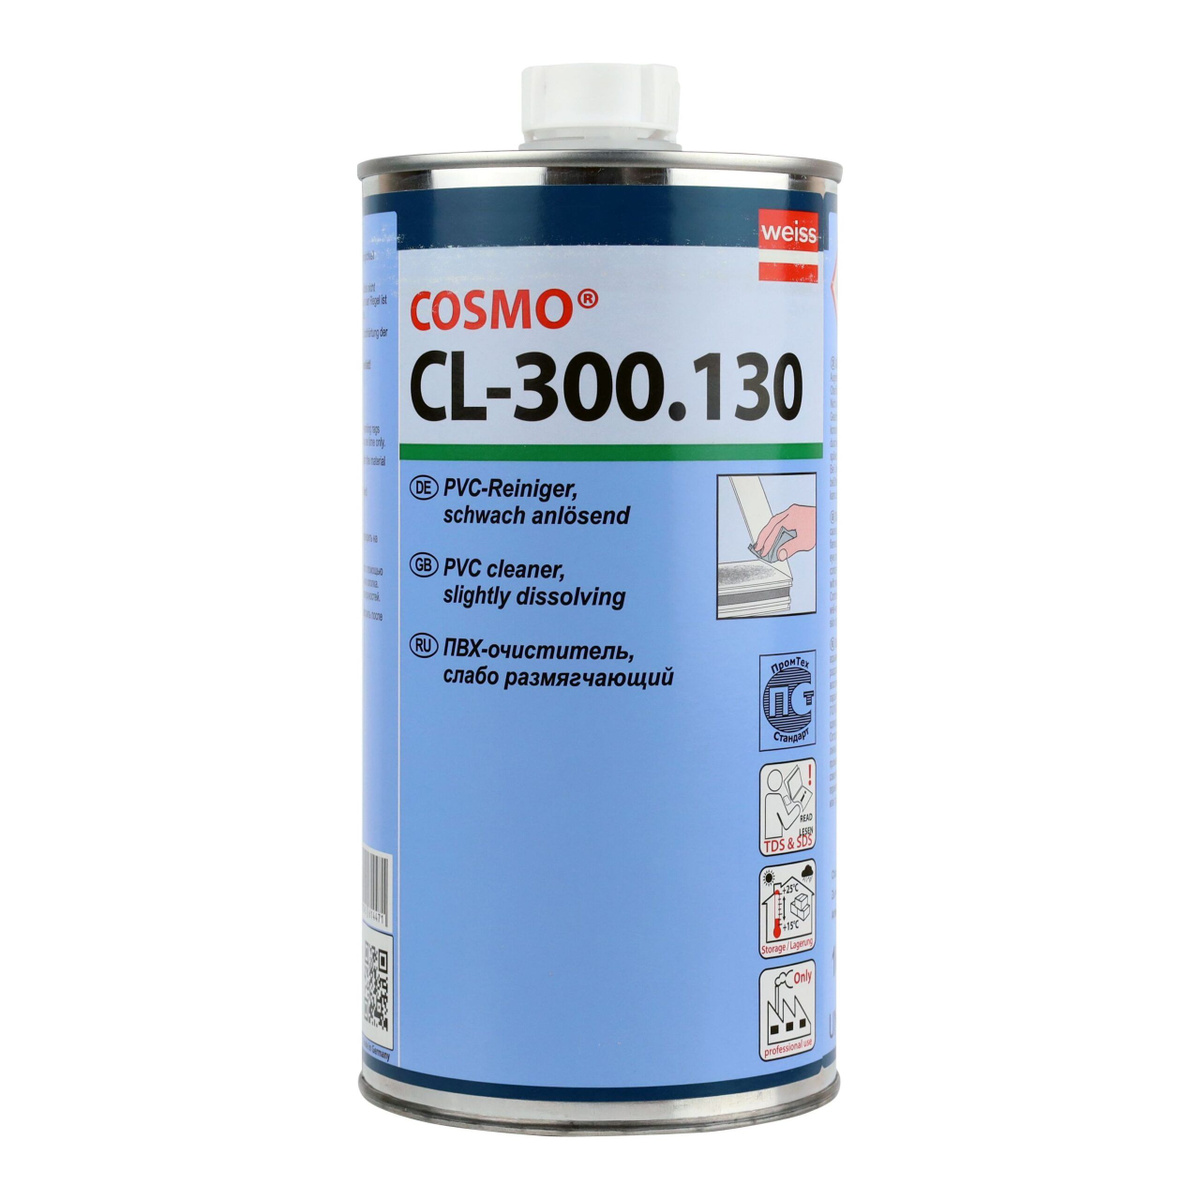 Слаборастворяющий очиститель CL-300.130